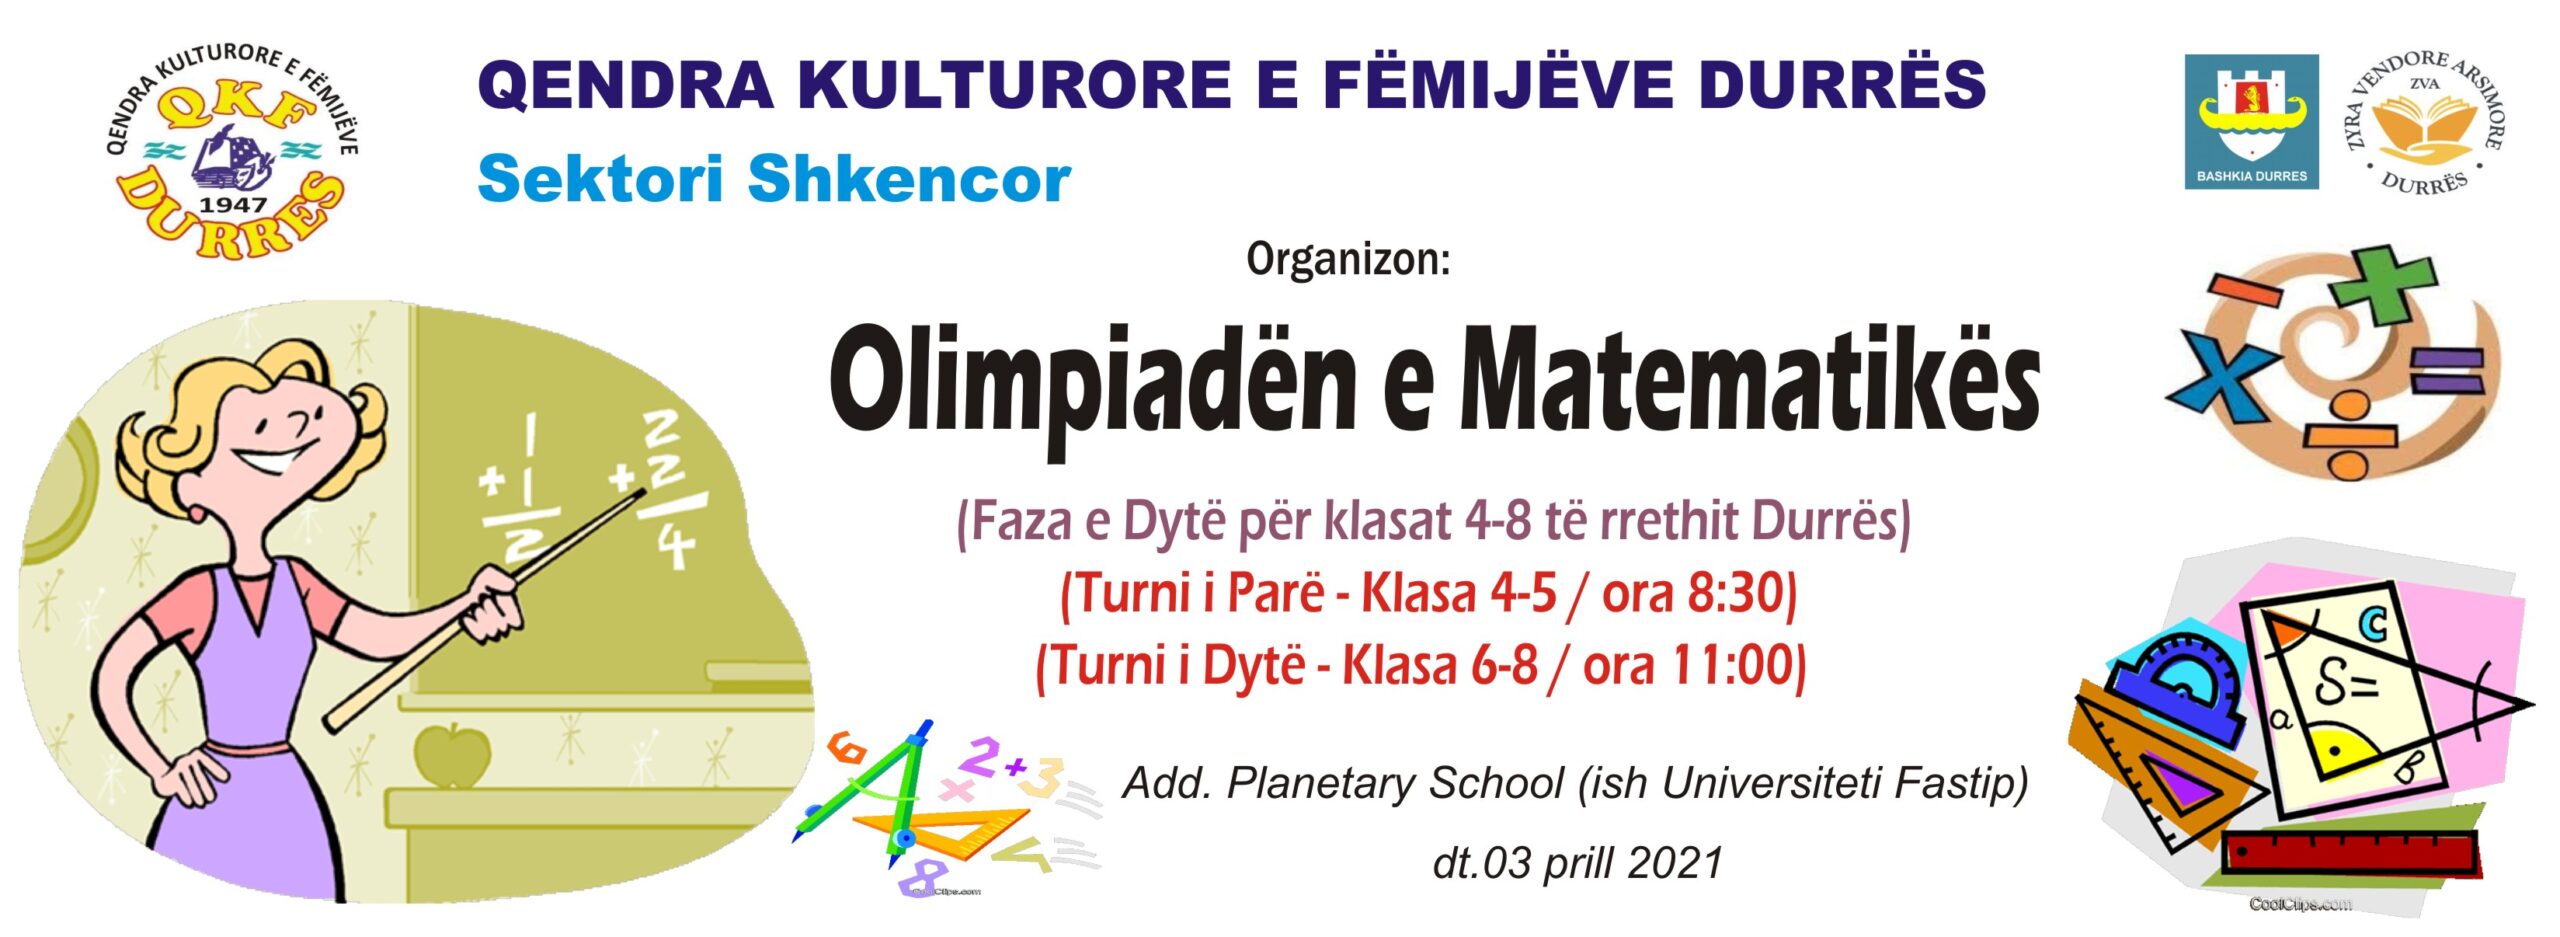 “Qendra Kulturore e Fëmijëve “organizon fazën e dytë të Olimpiadës së Matematikës